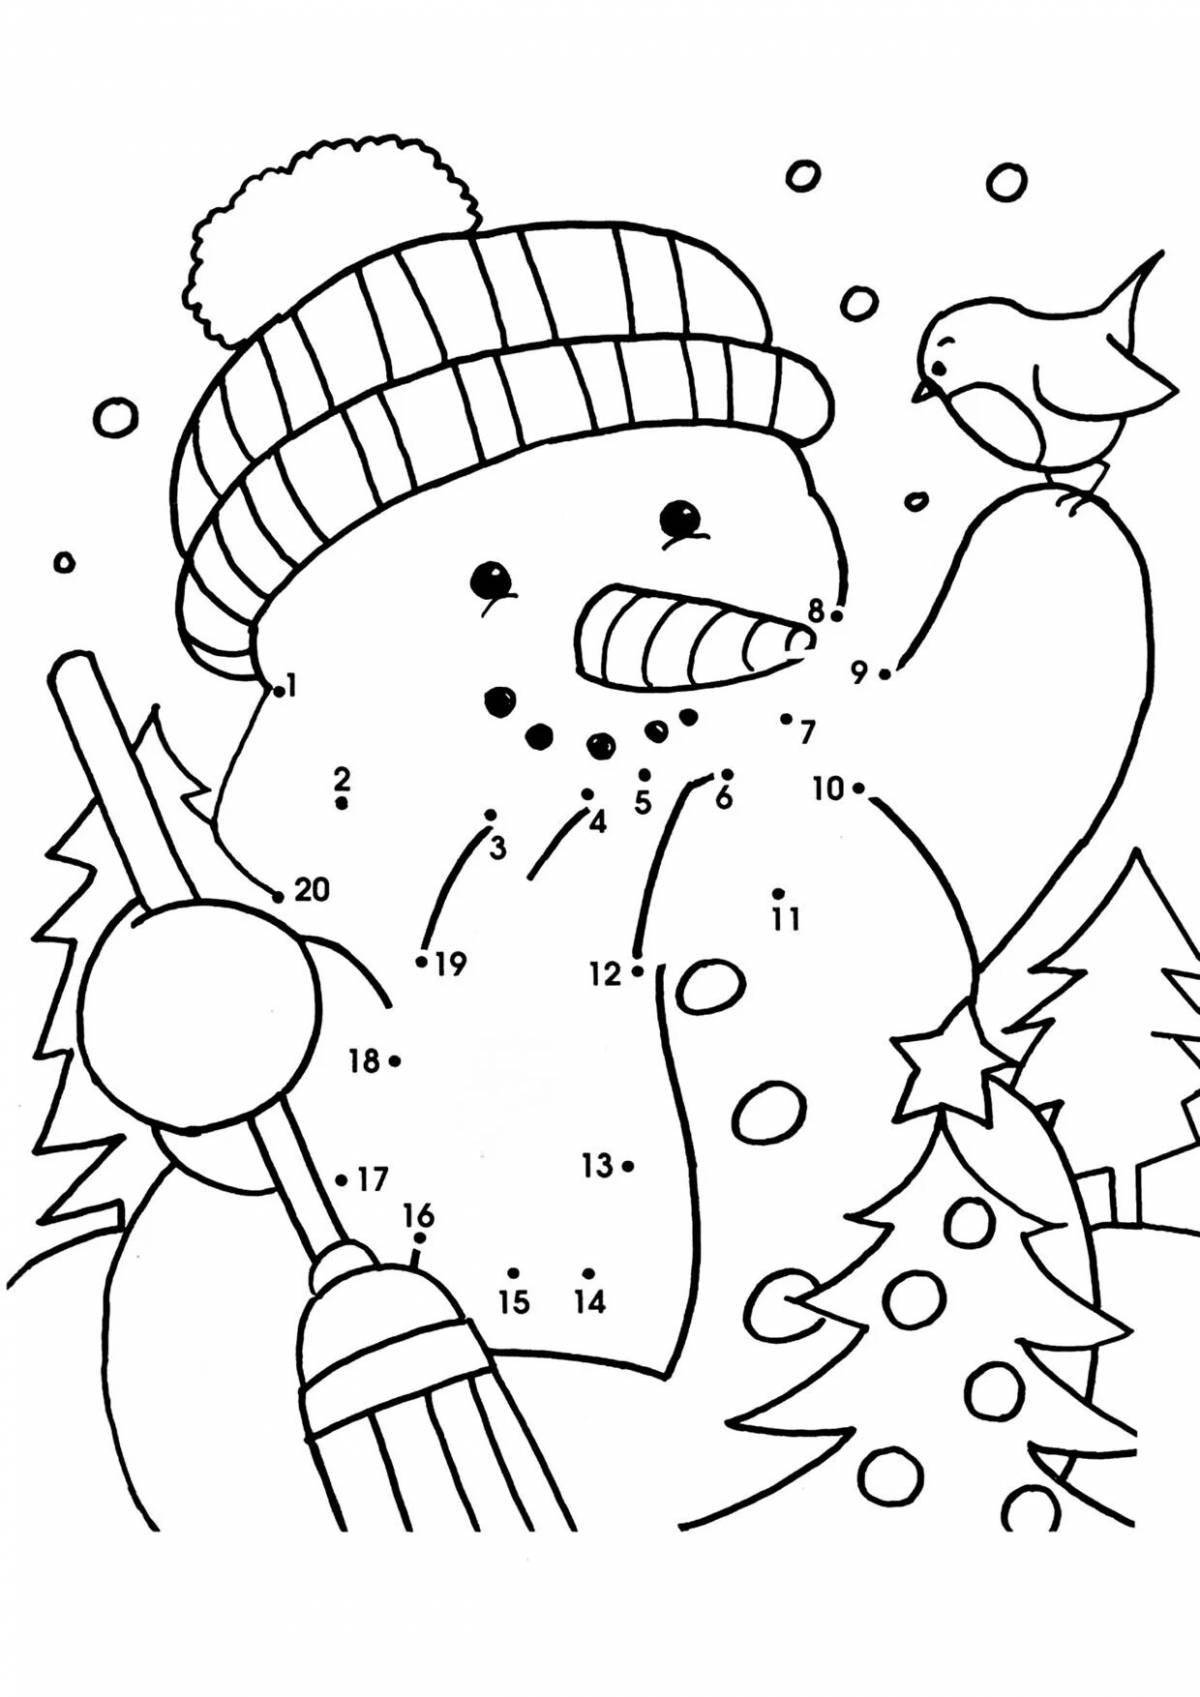 Веселая раскраска снеговик по номерам